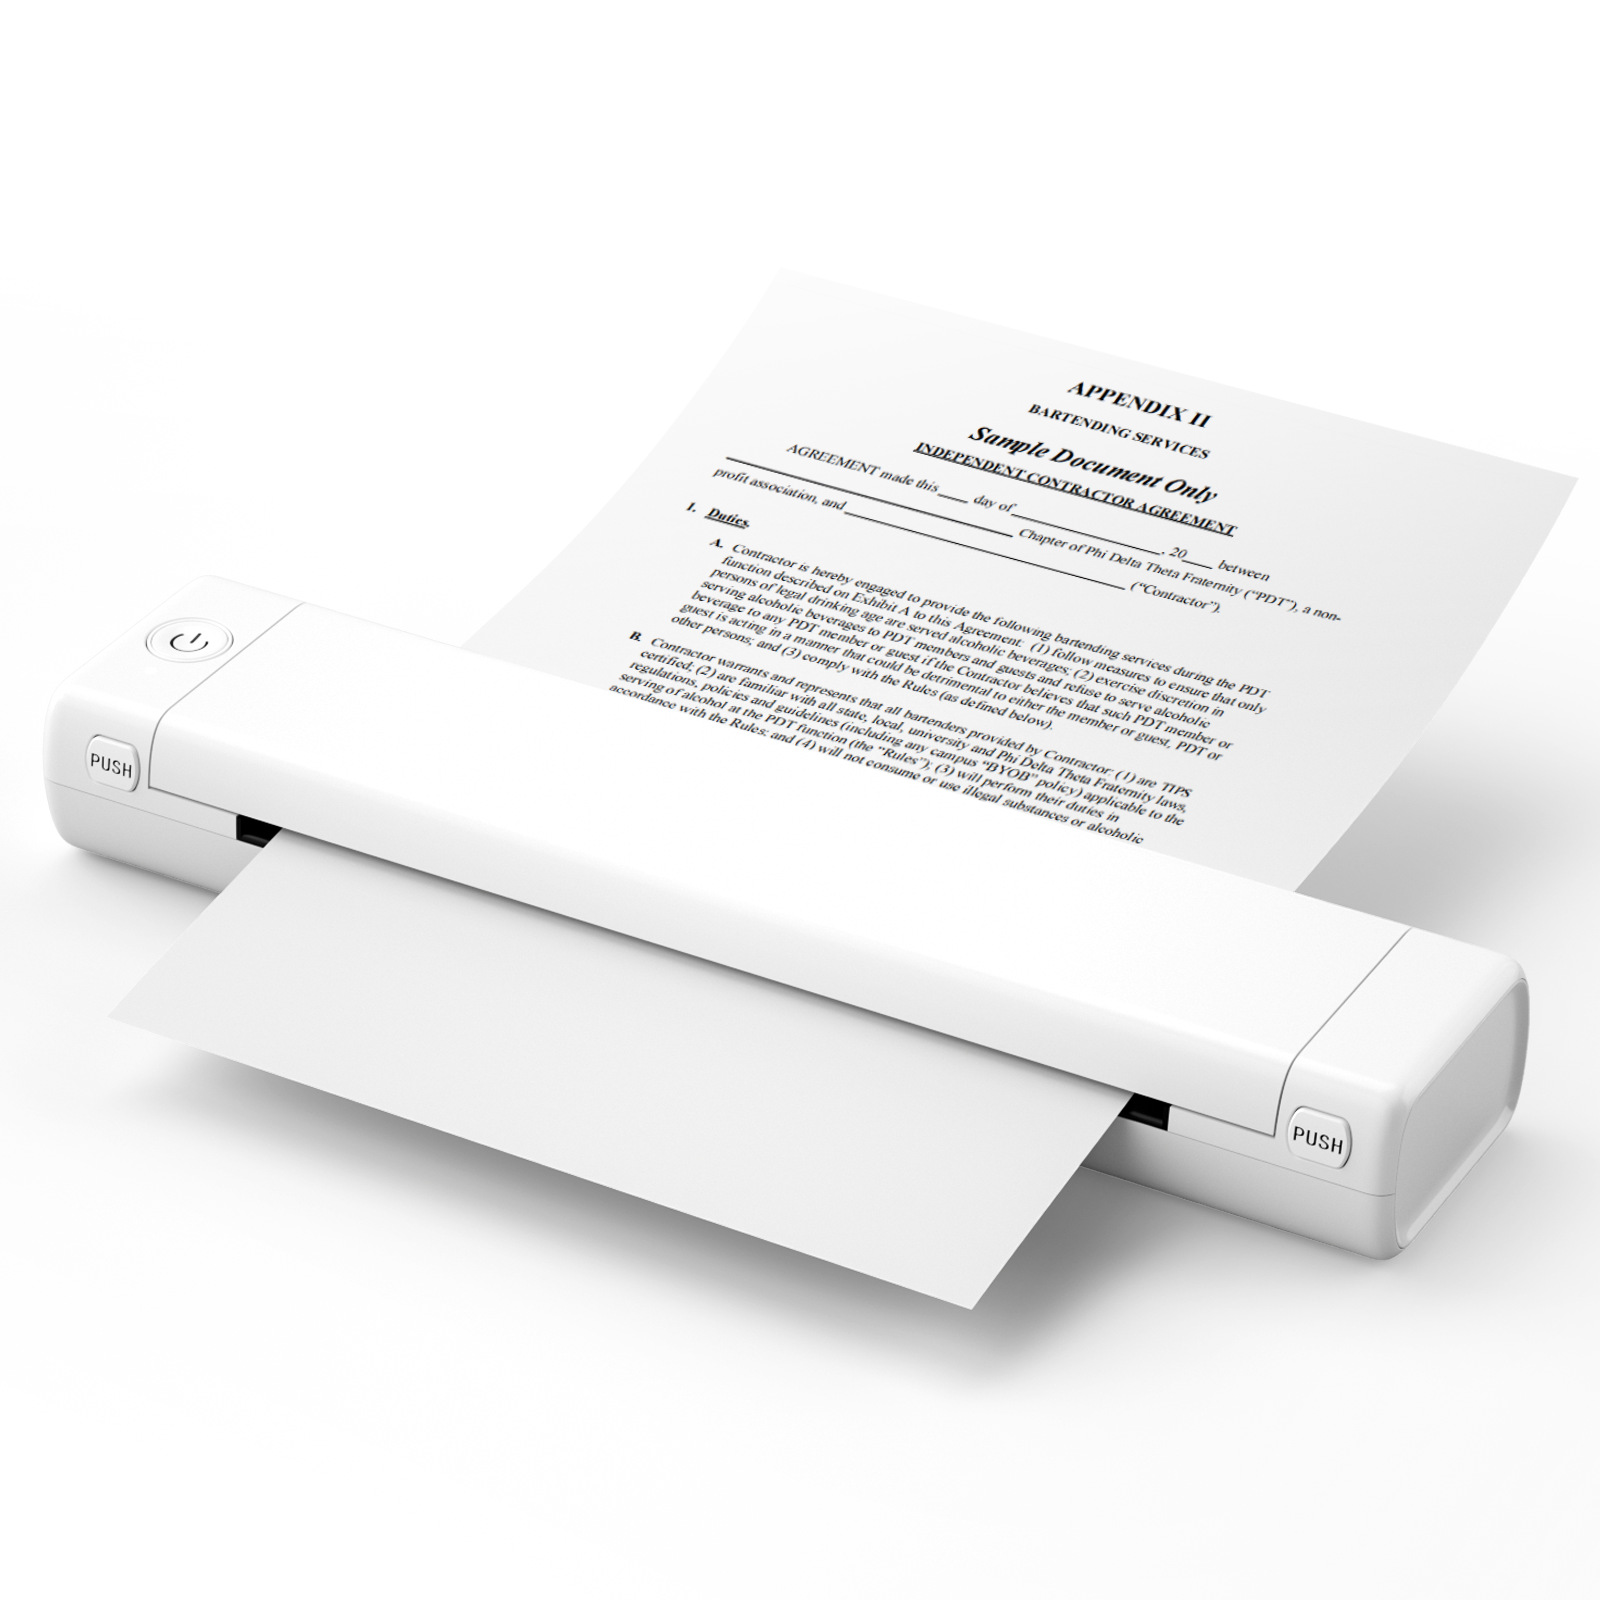 BYTELIKE A4 Thermodruck Papiere Ohne Thermo-Fehlerdrucker Mini Fotodrucker Hausaufgaben Büro Klein